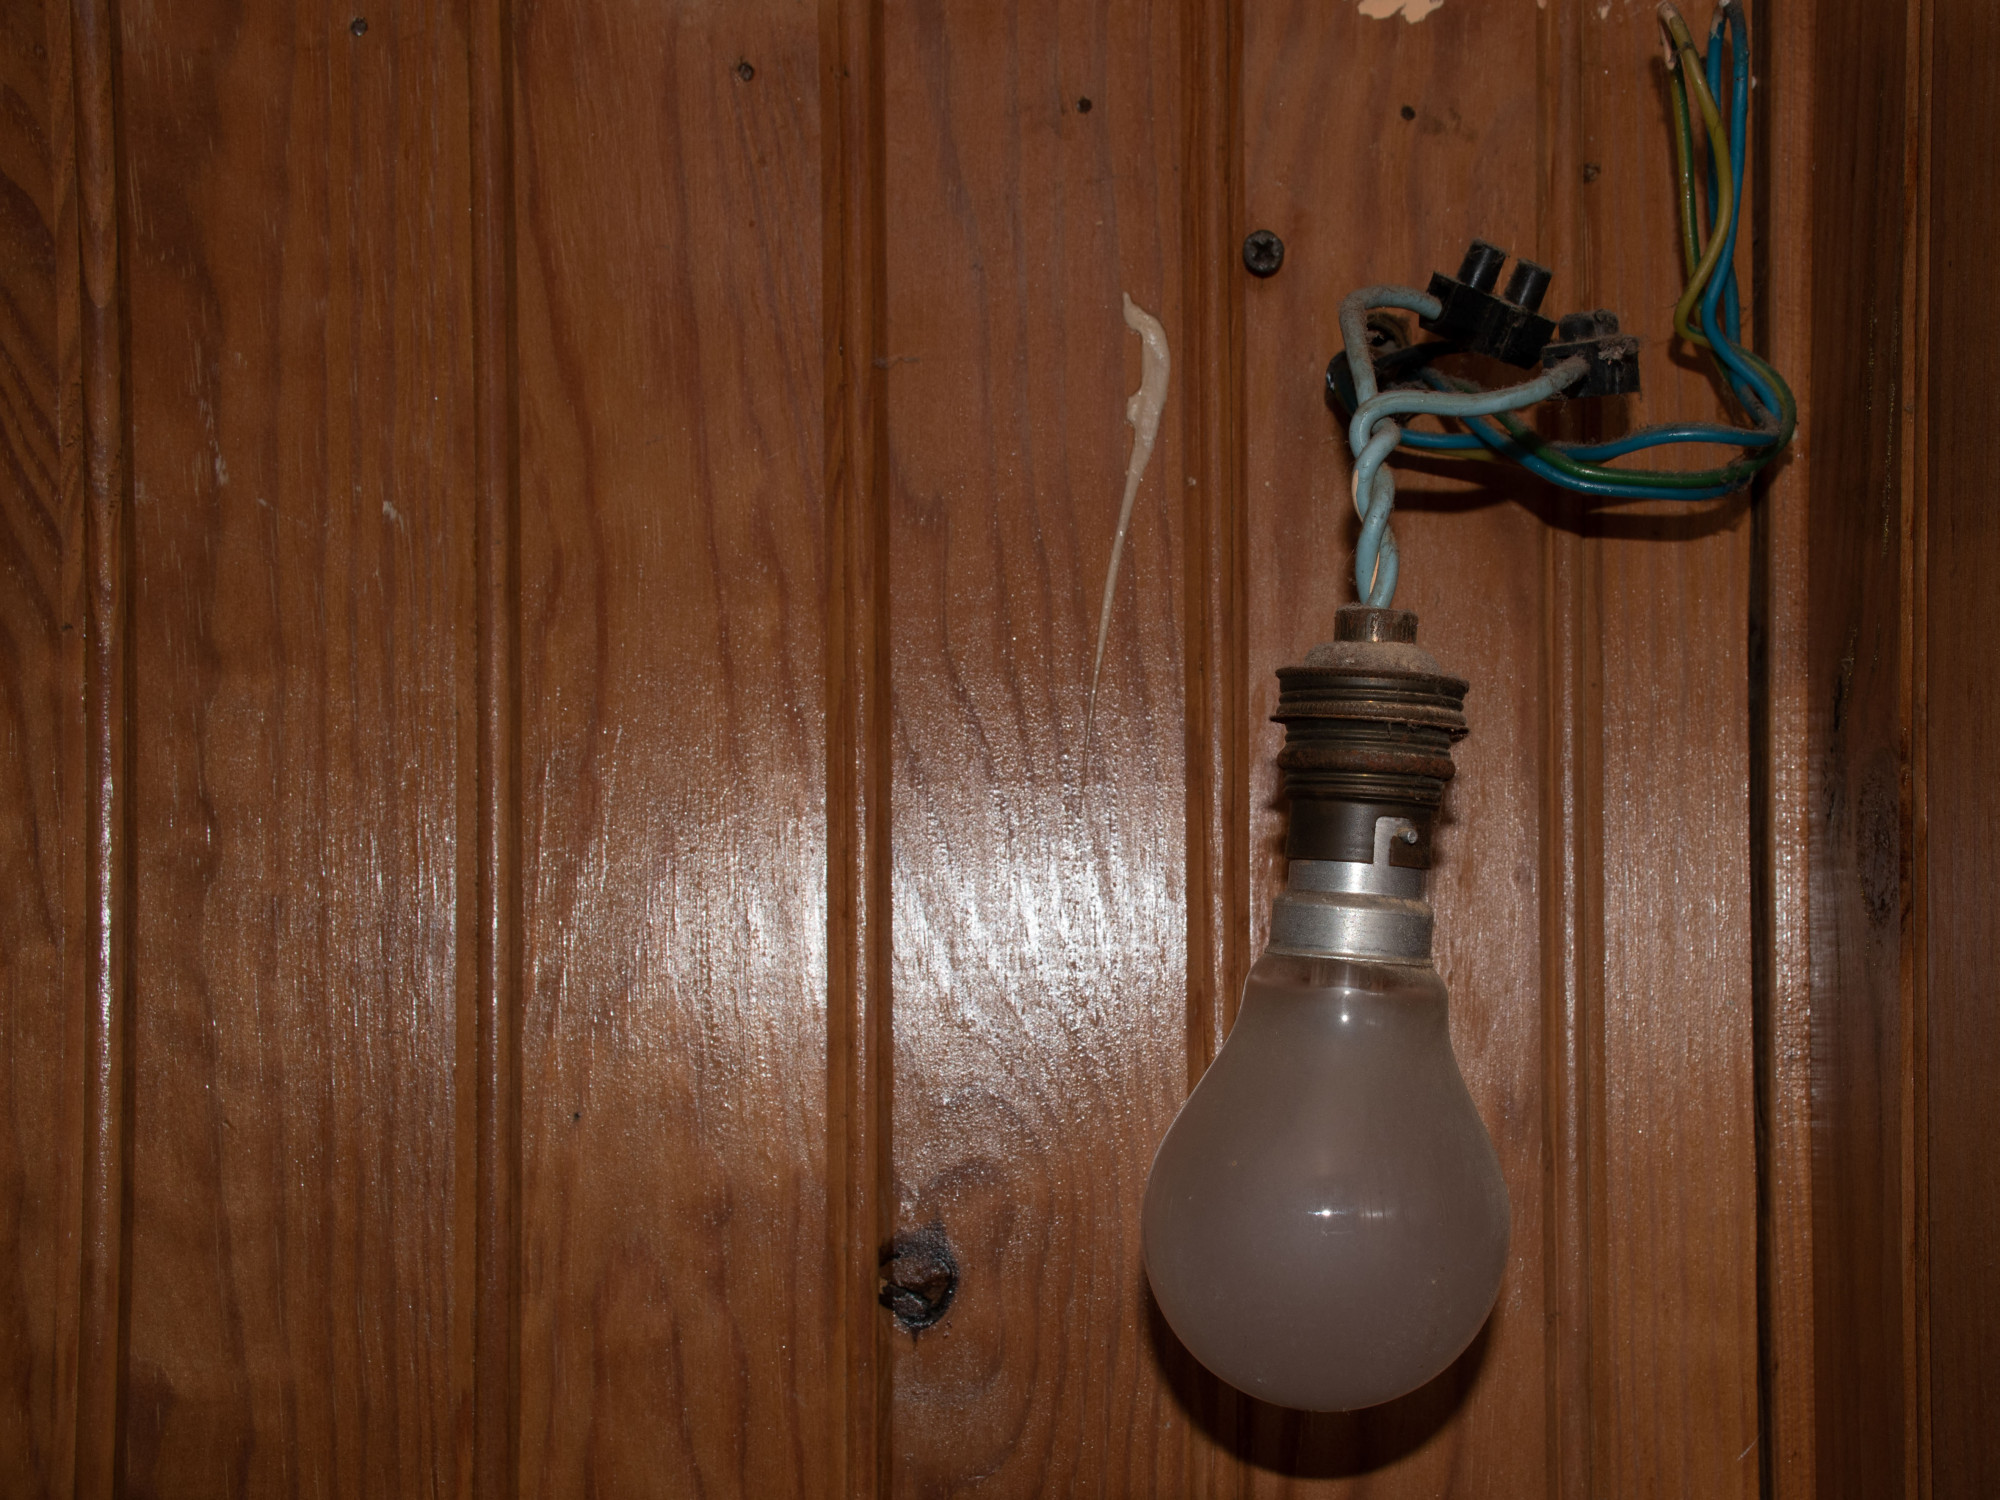 Tévedésből kikapcsolták az áramot egy budapesti iskolában